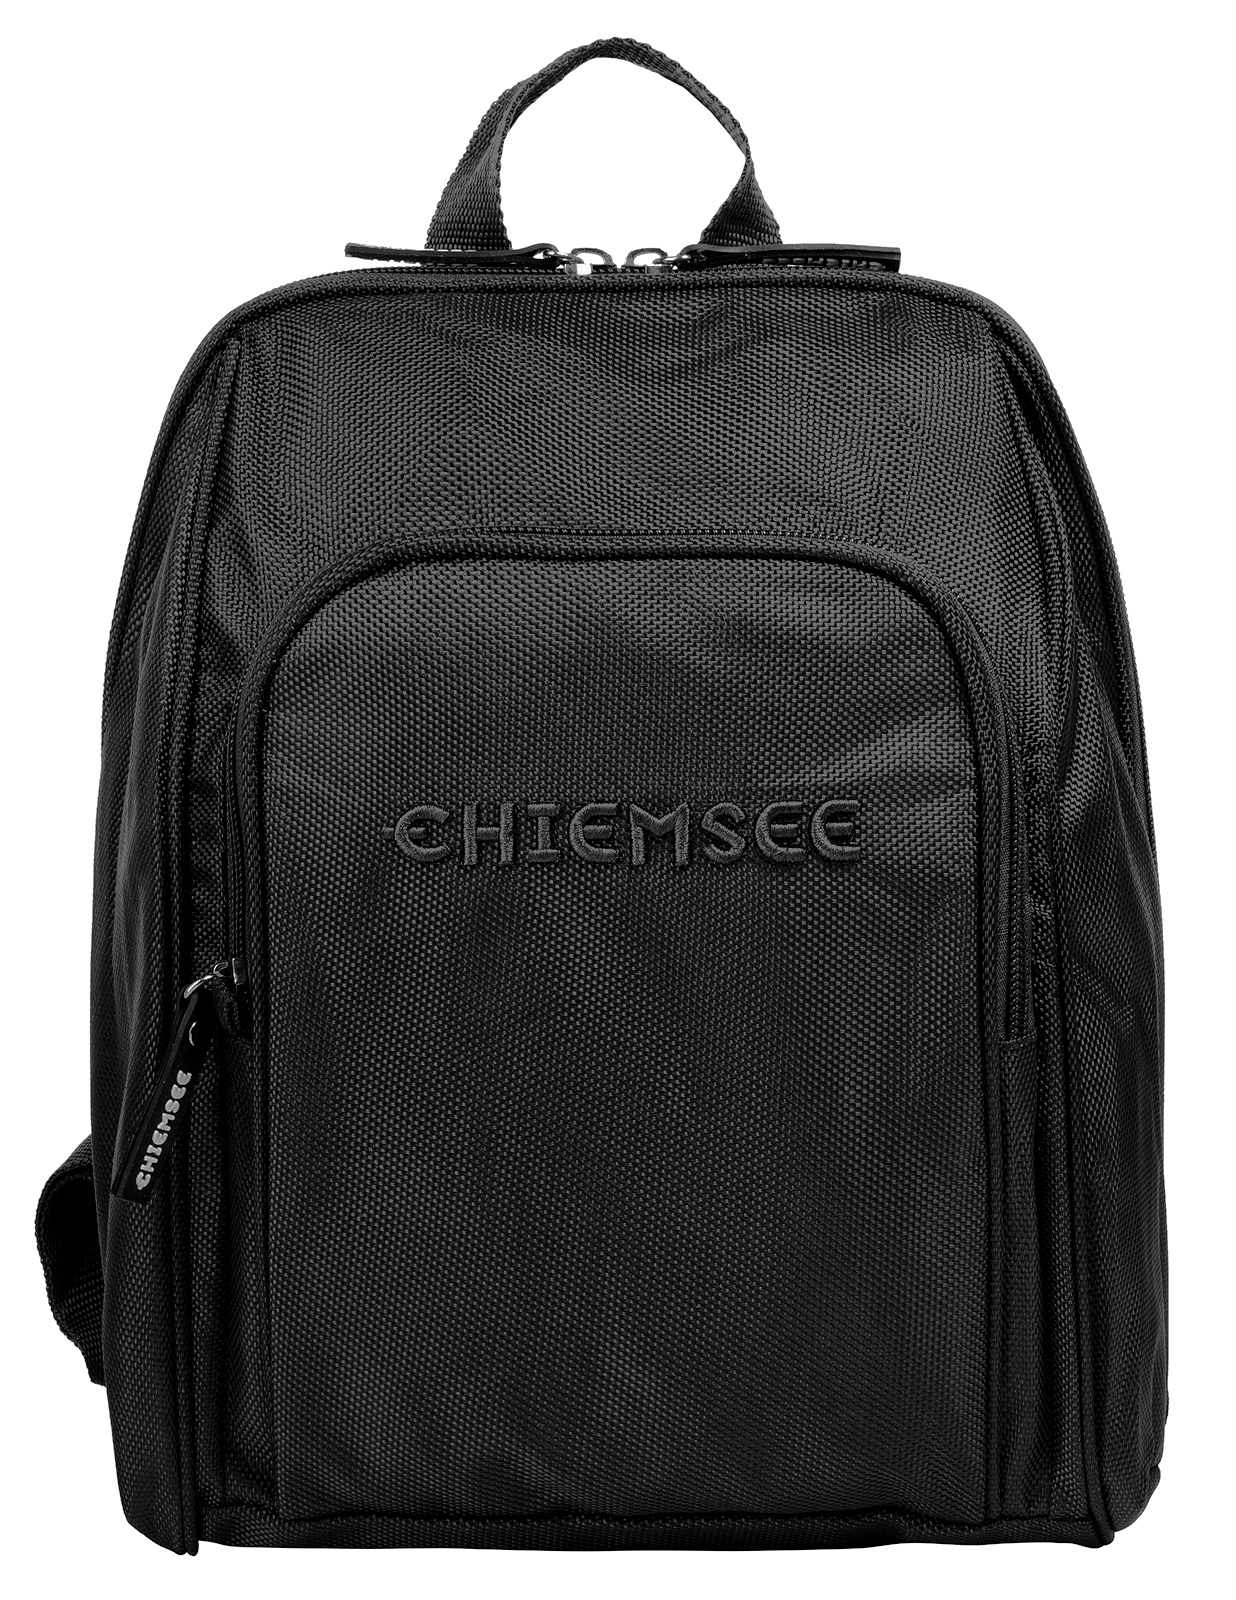 Chiemsee Cityrucksack von Chiemsee